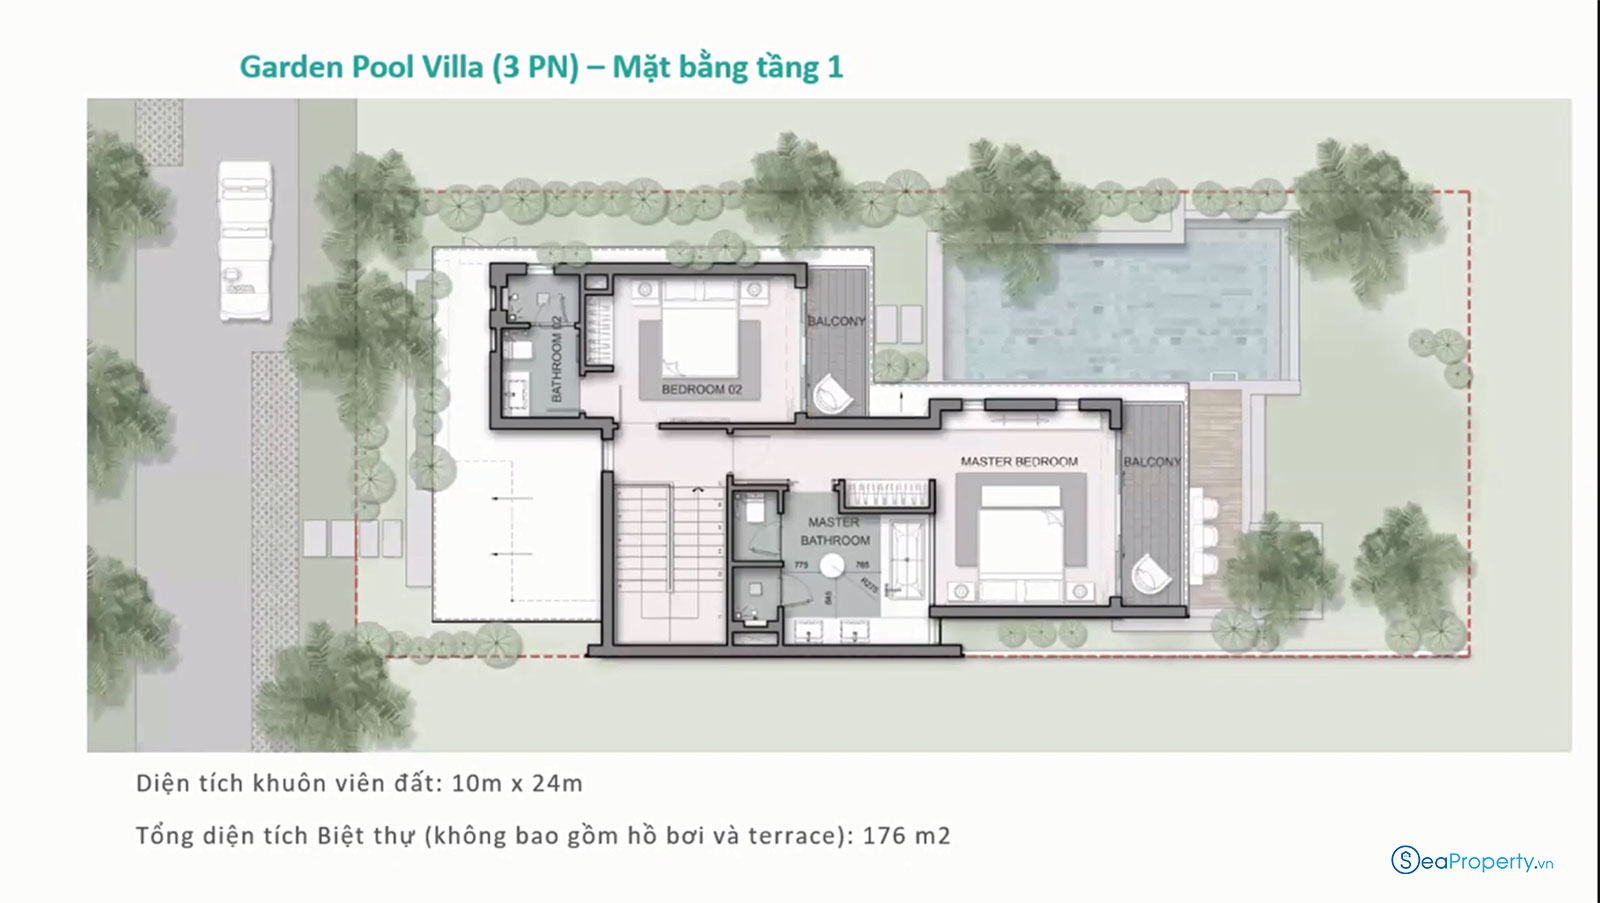 Layout biệt thự Maia Quy Nhơn Garden pool villa 3 phòng ngủ